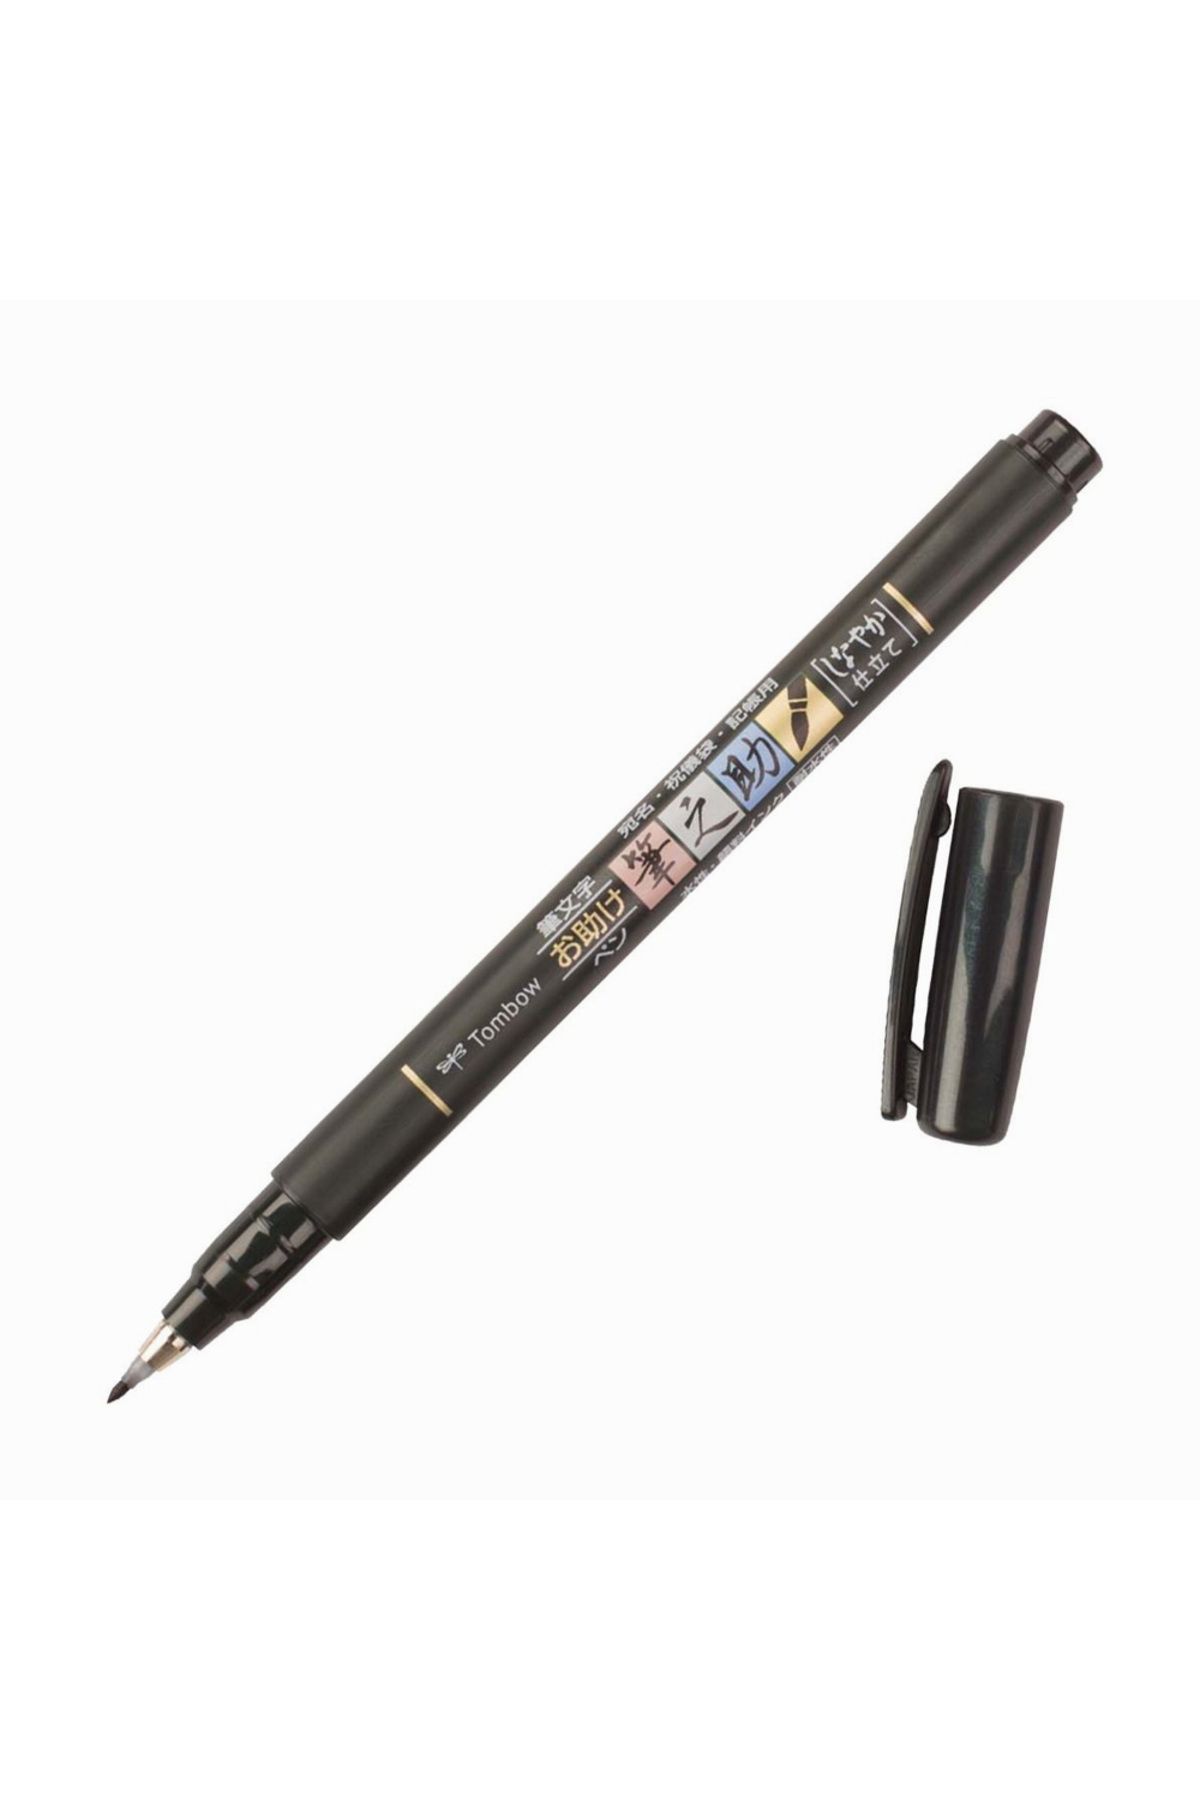 Tombow Fudenosuke Brush Pen Fırça Uçlu Kalem Yumuşak Uç - Siyah